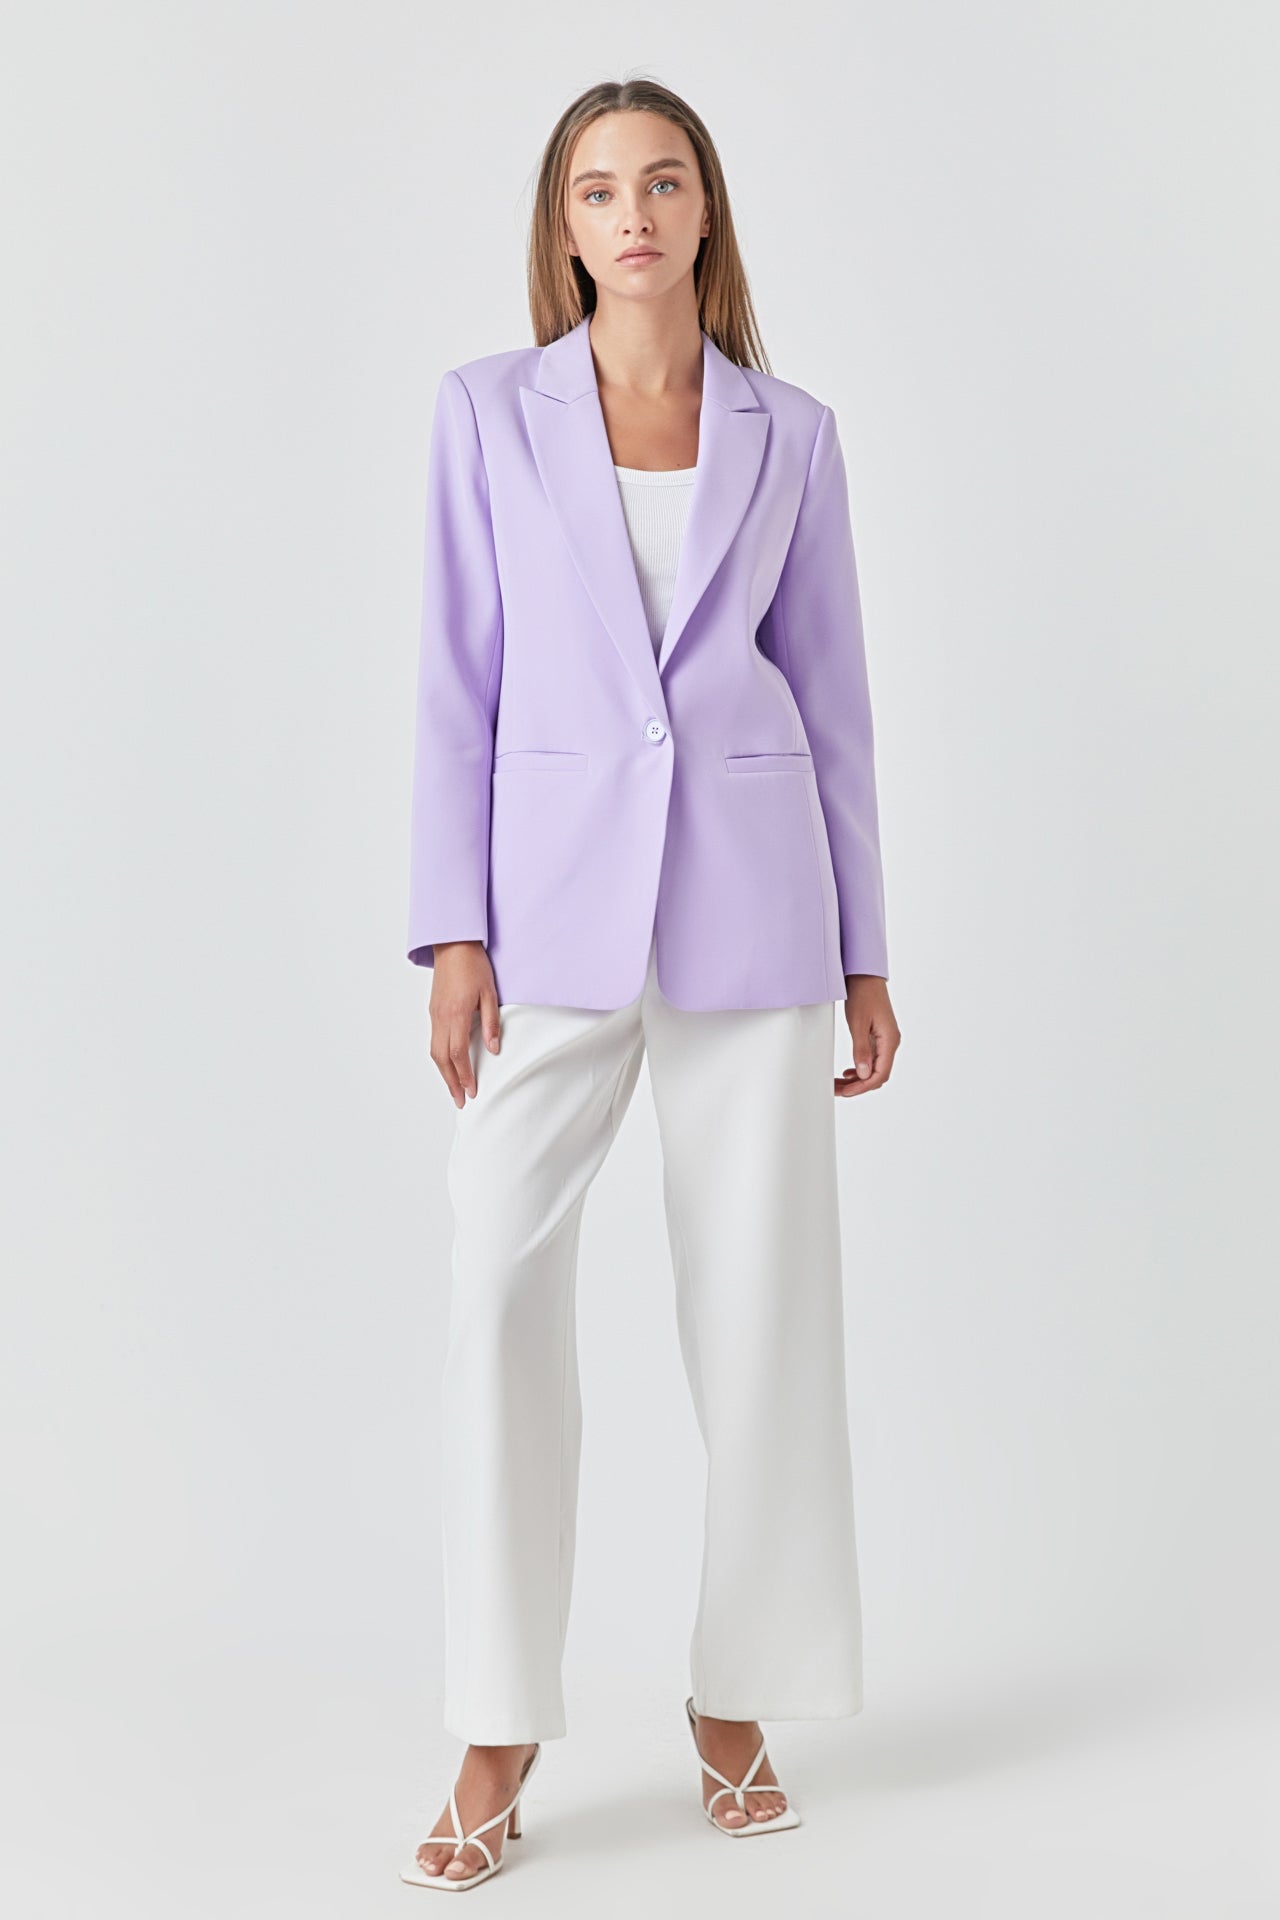 Lavender Pants Suit for Women, Office Pant Suit Set for Women, Blazer Suit  Set Womens, High Waist Straight Pants, Blazer and Trousers Women -  New  Zealand